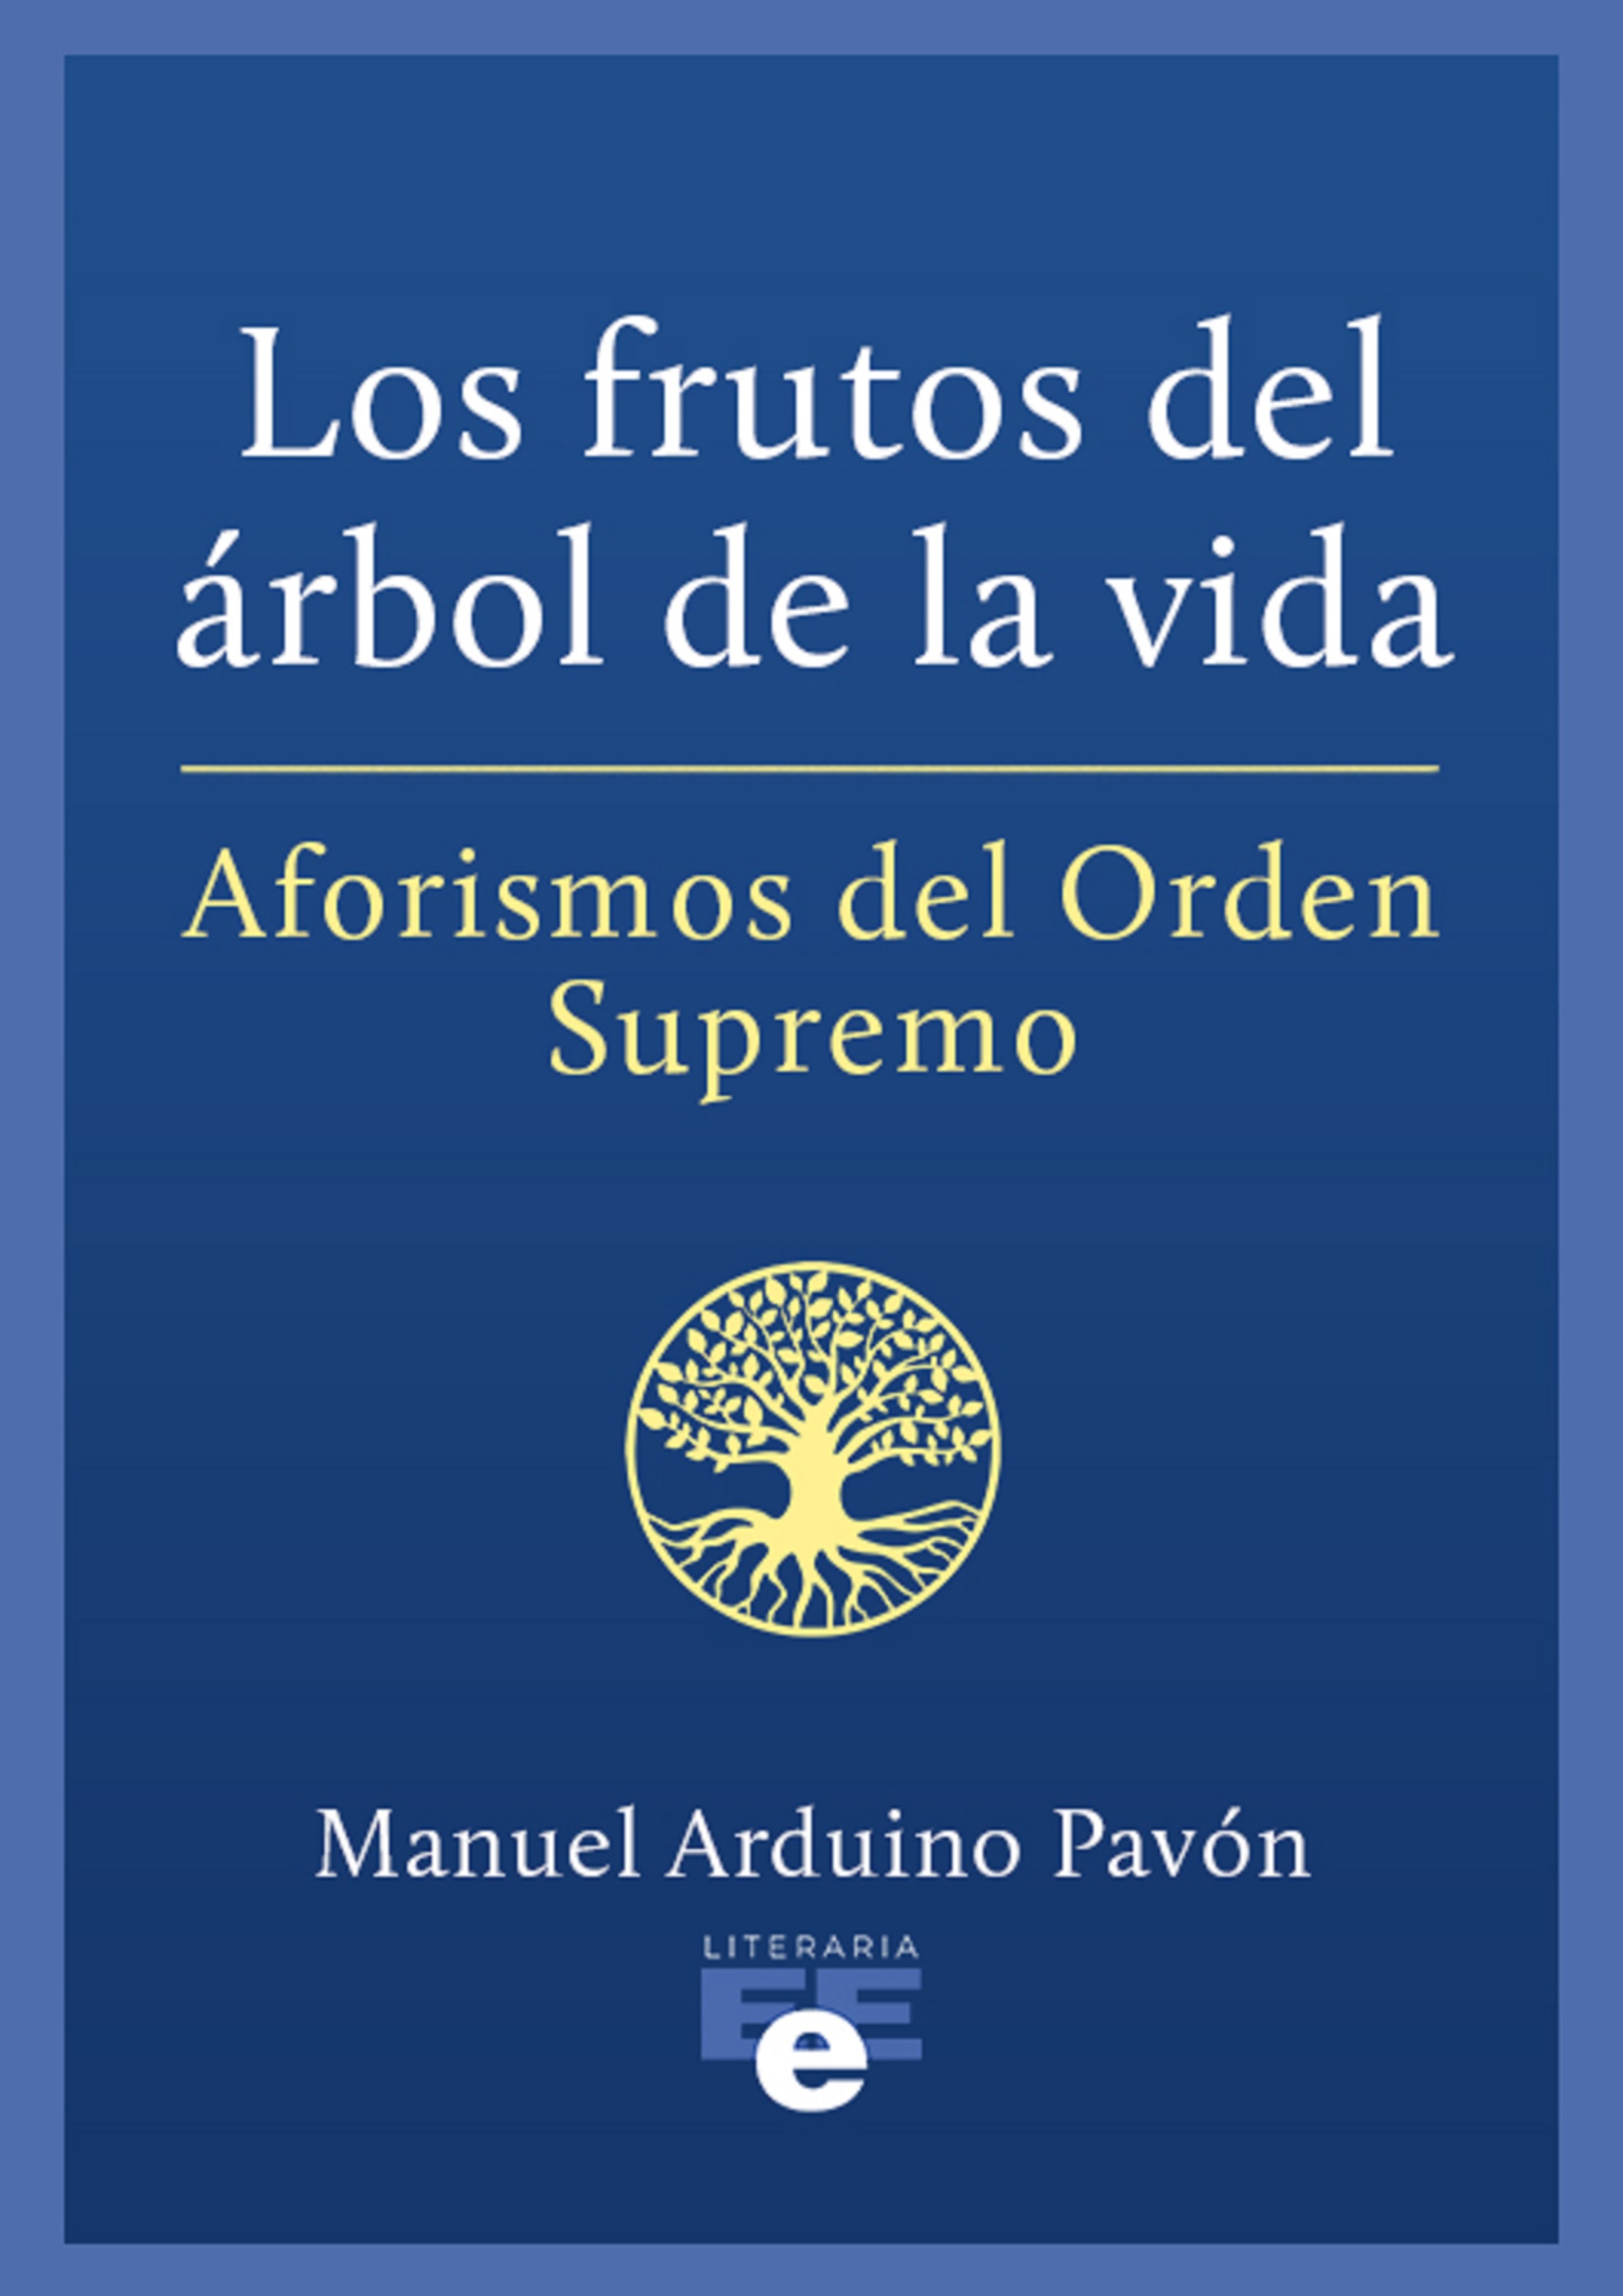 Скачать Los frutos del árbol de la vida - Manuel Arduino Pavón